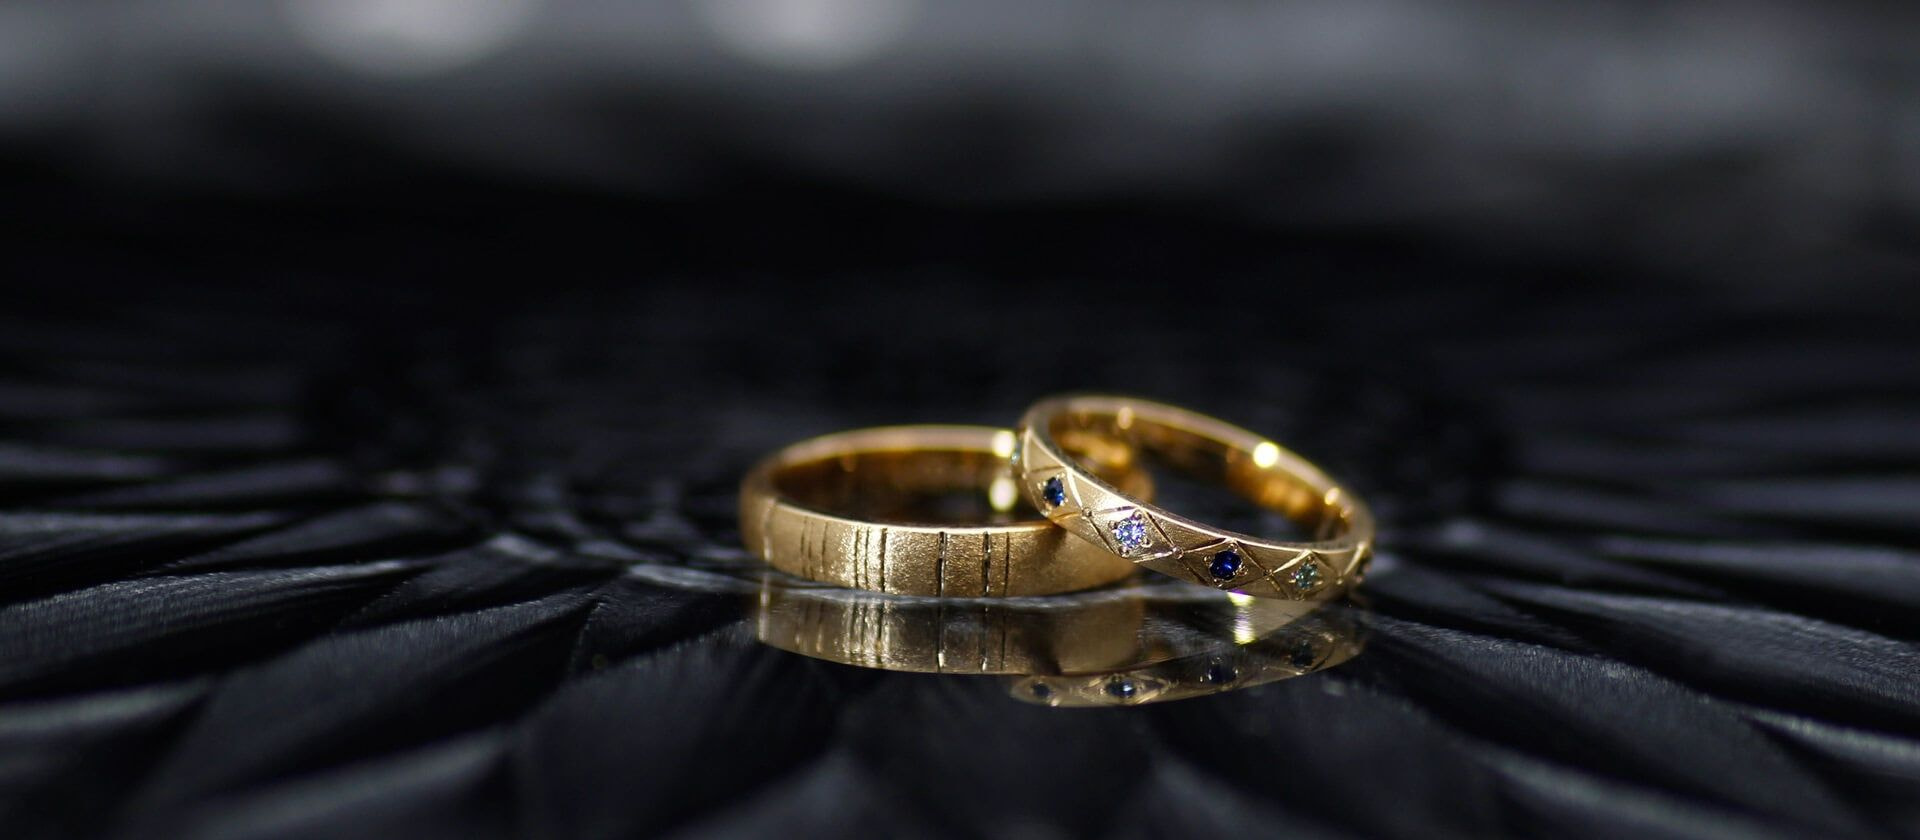 J.C.BAR 結婚指輪について